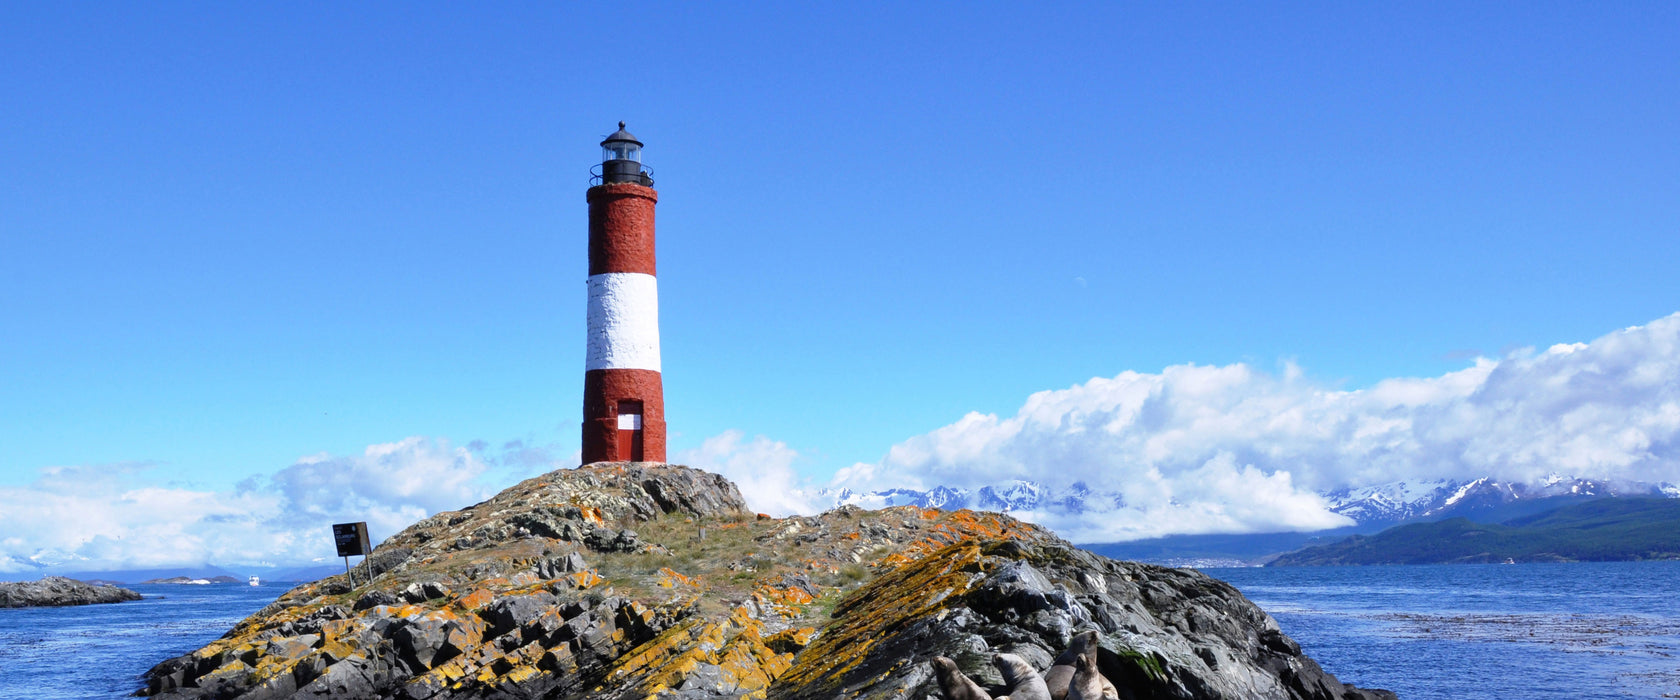 Leuchtturm mit Robben, Glasbild Panorama